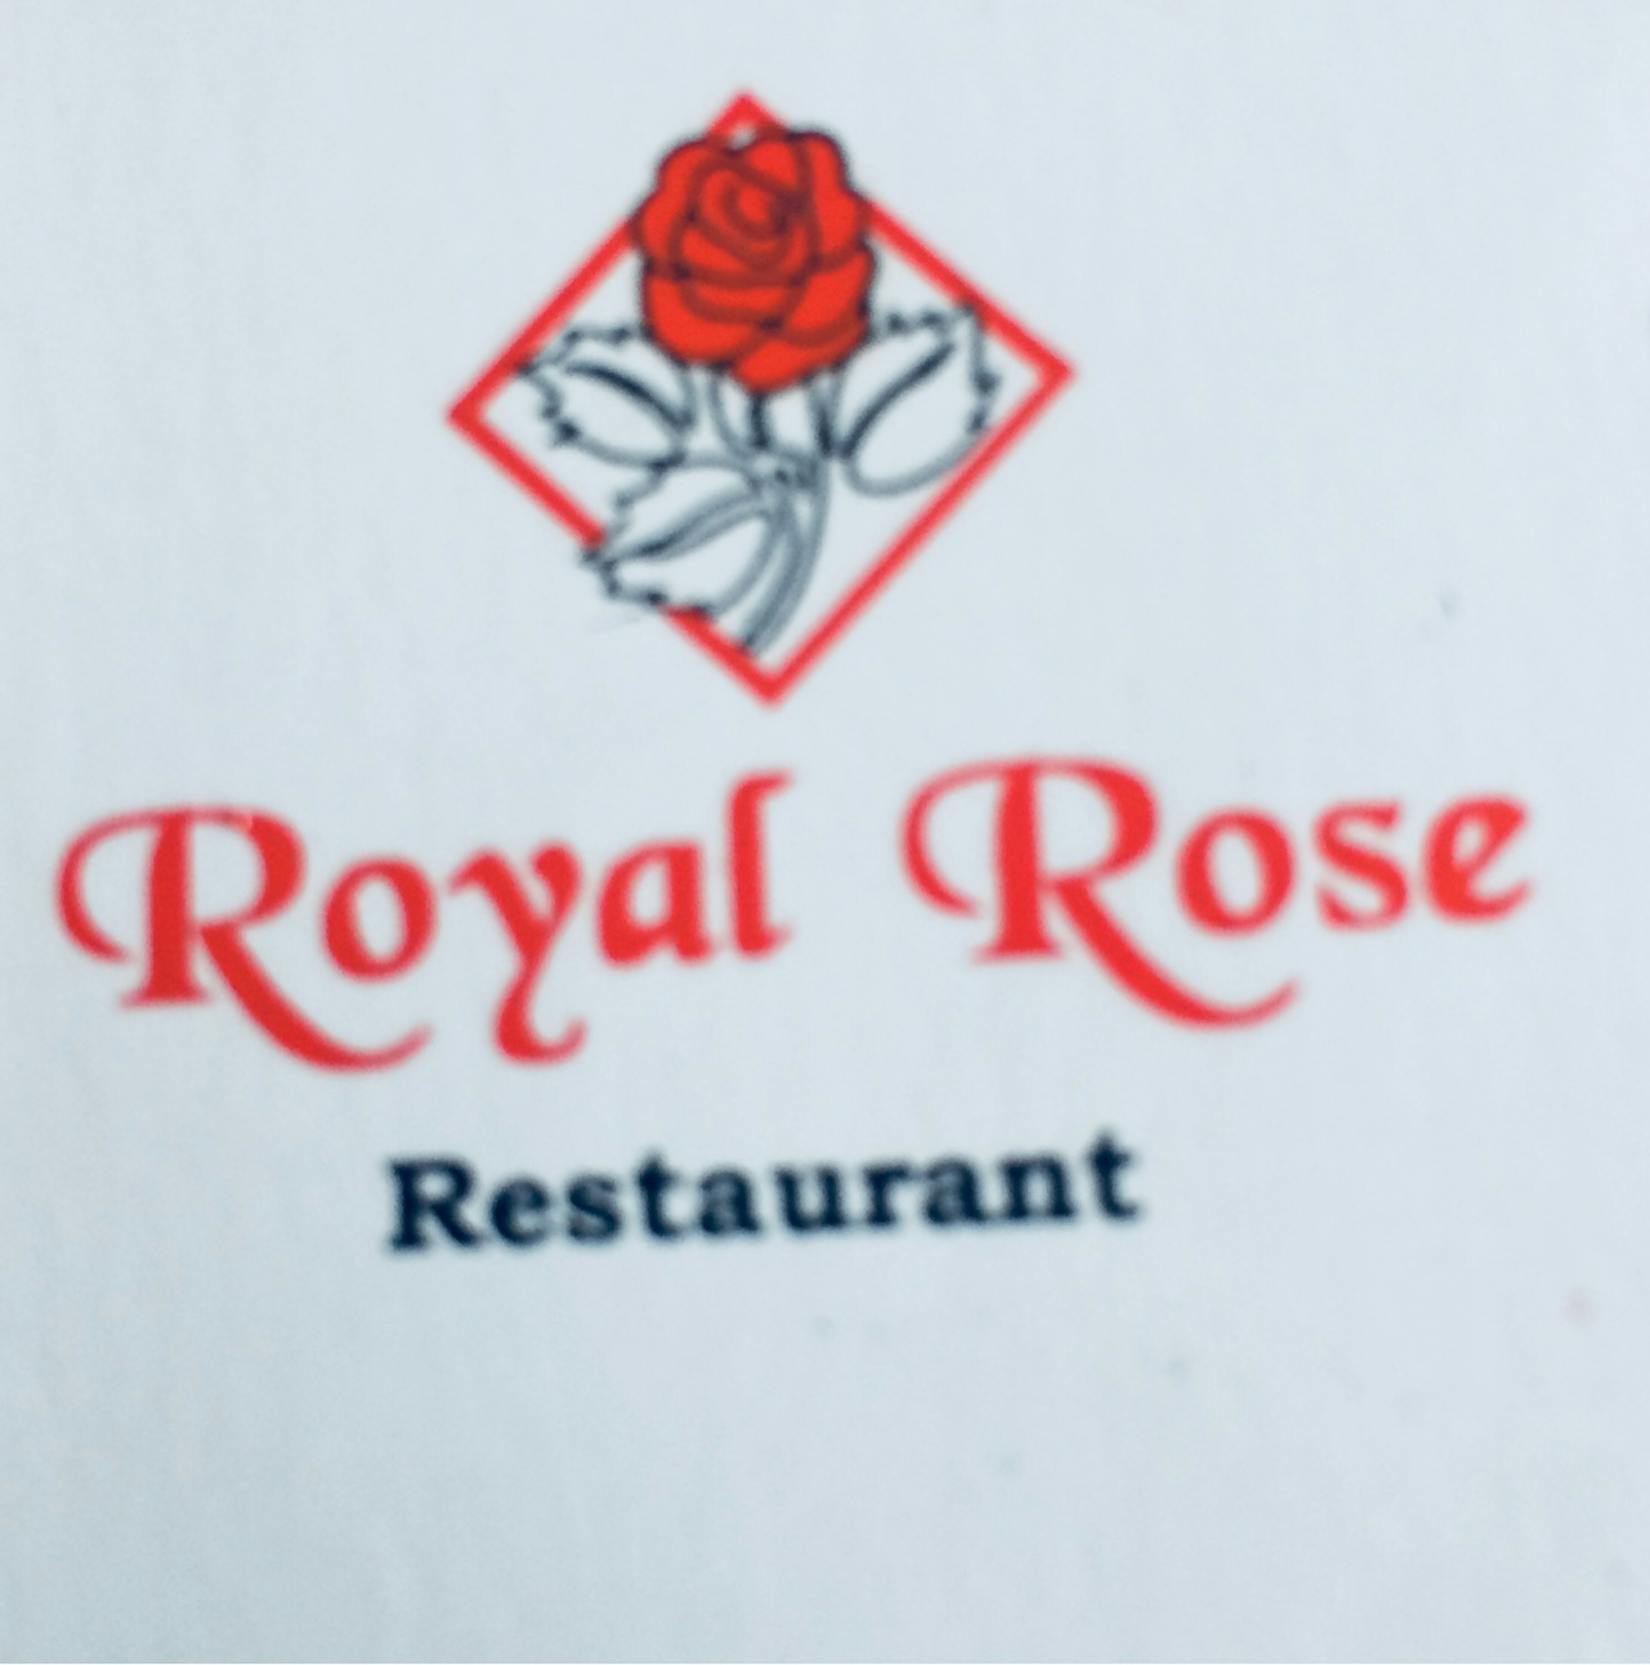 Royal Rose | yathar